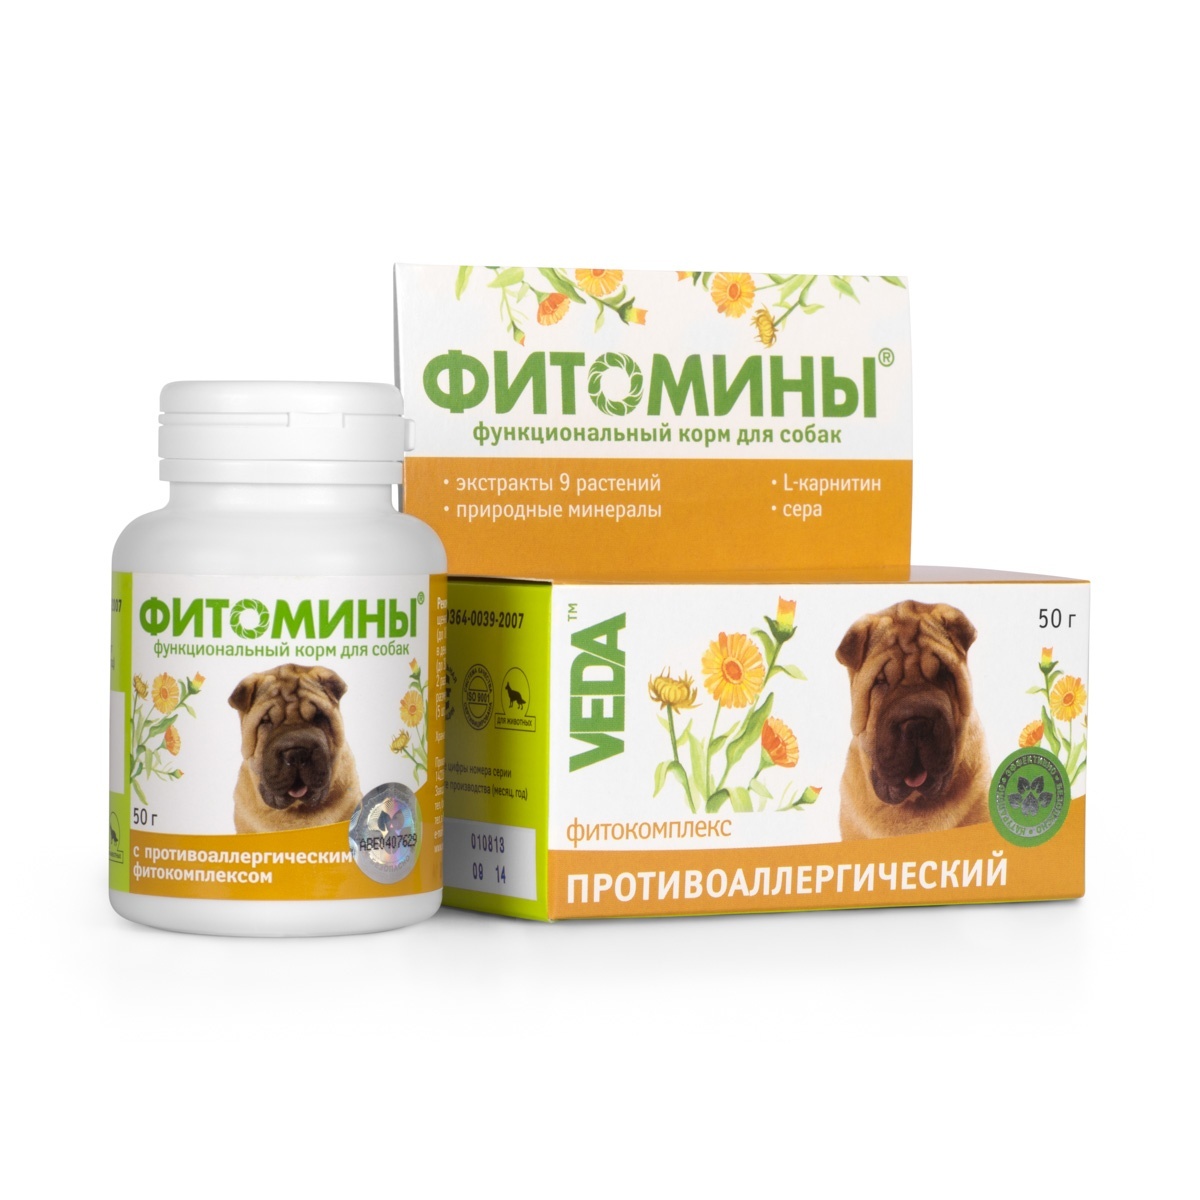 Веда Веда фитомины от аллергии для собак, 100 таб. (50 г) функциональный корм для собак веда фитомины для укрепления и восстановления суставов 100таб